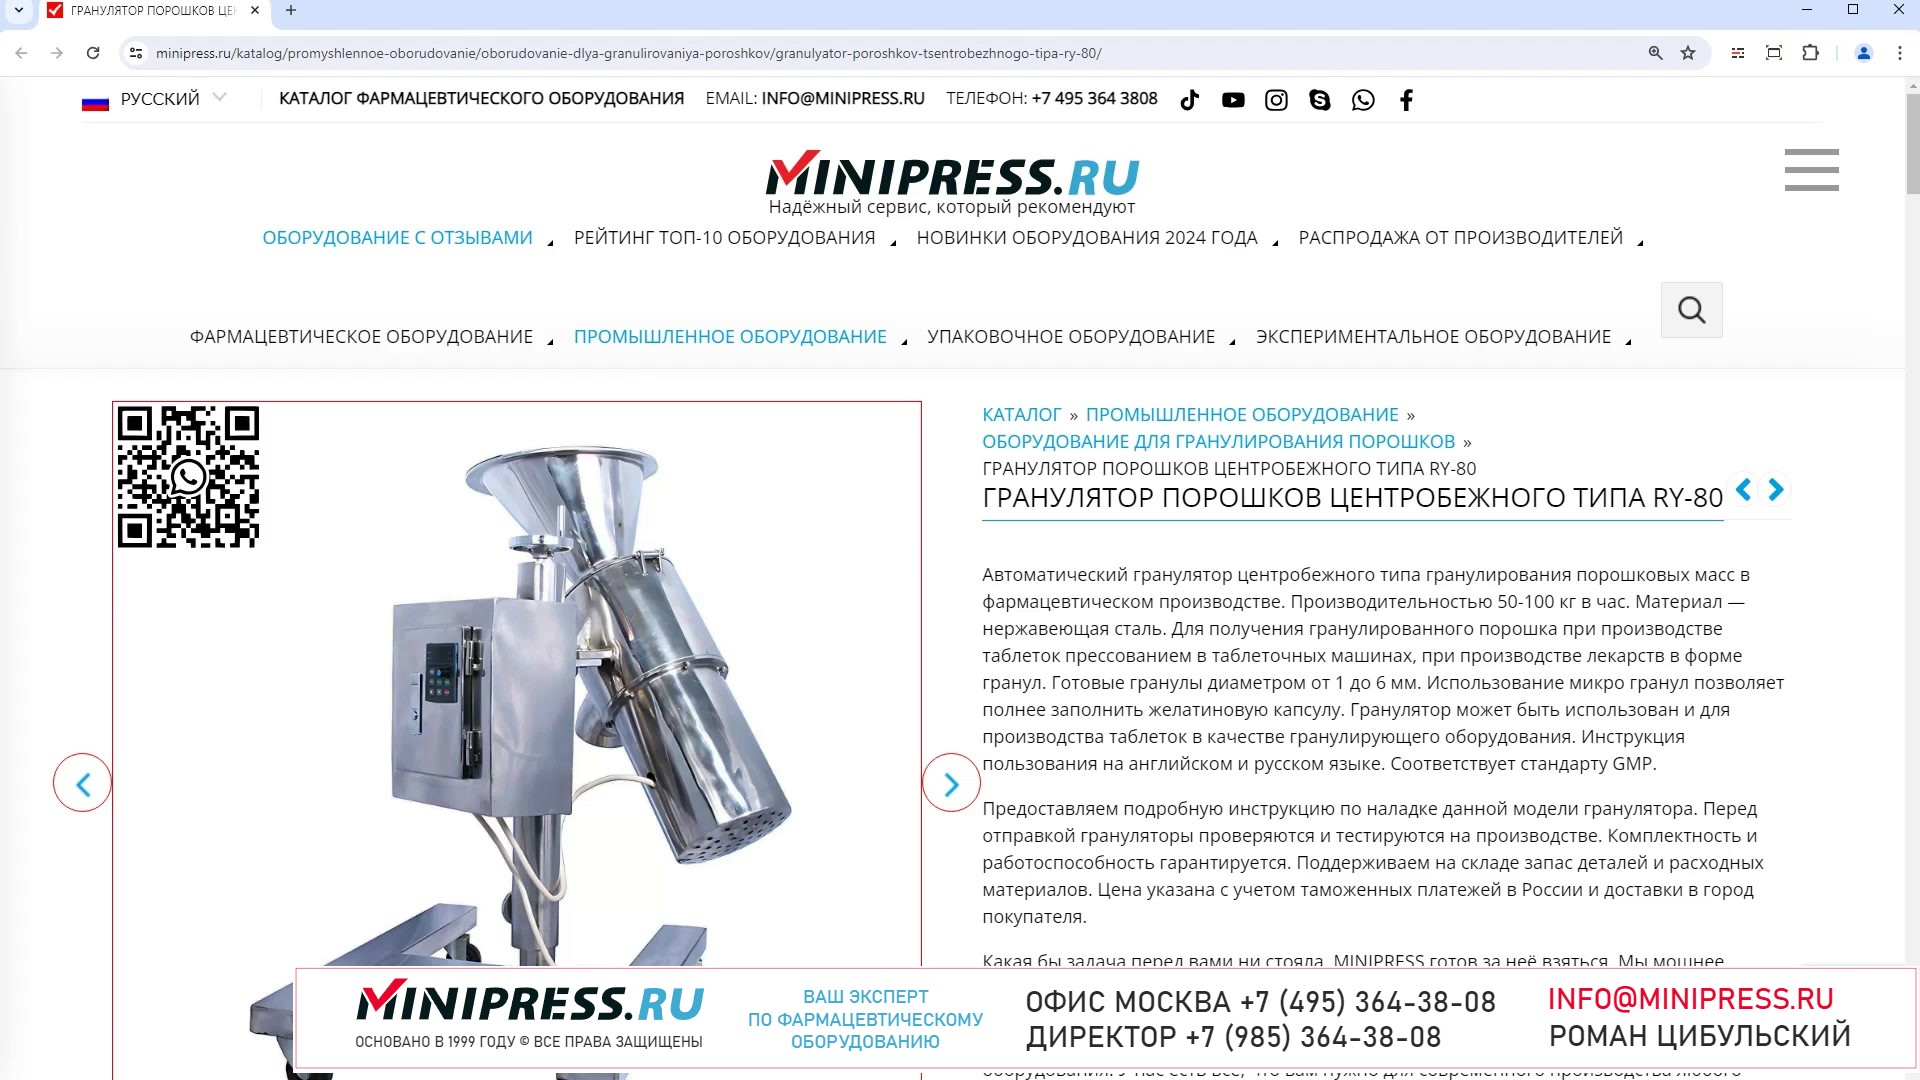 Minipress.ru Гранулятор порошков центробежного типа RY-80